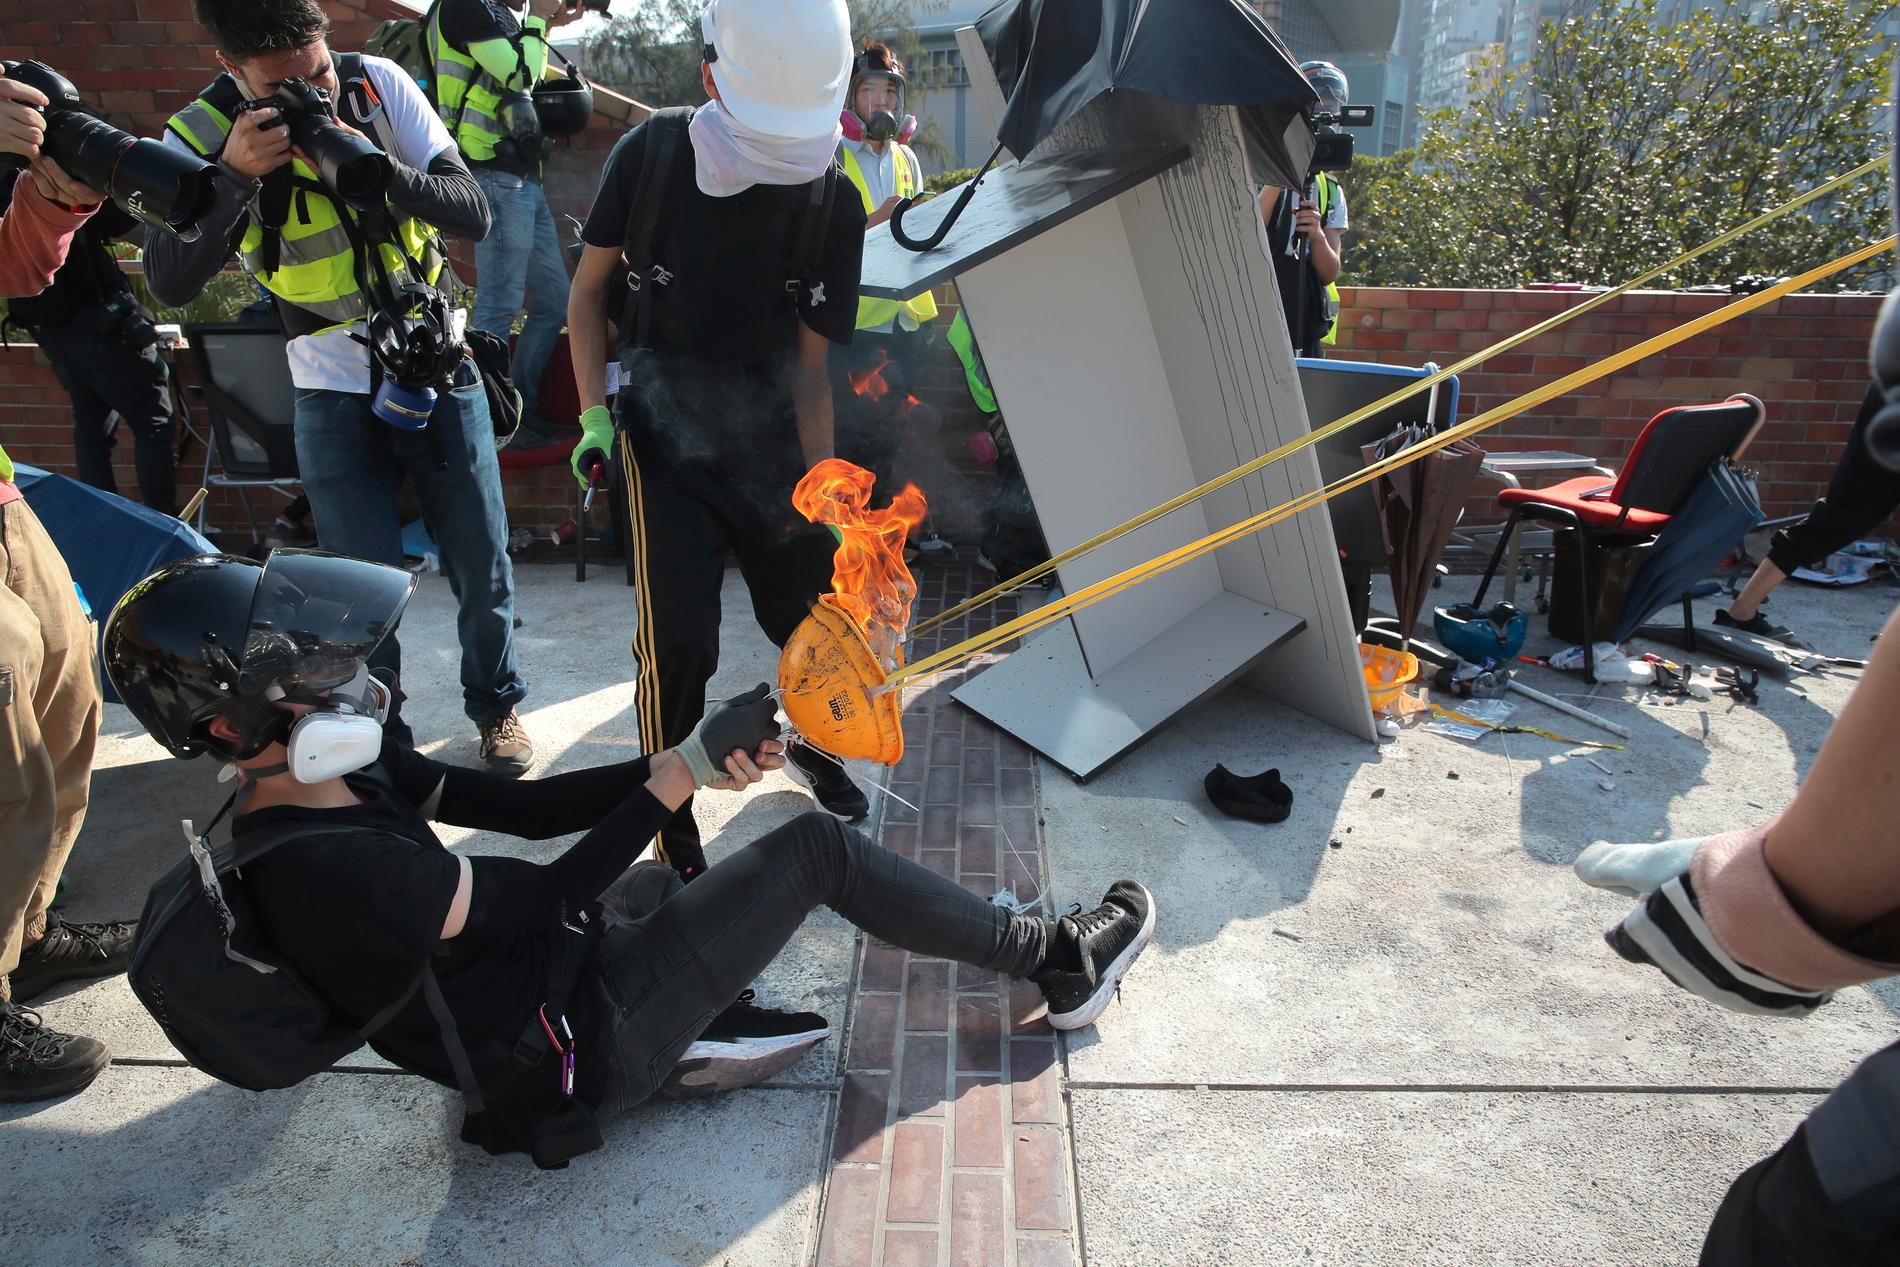 Tidigare i veckan kom rapporter om demonstranter som byggt katapulter för att avlossa eldprojektiler.